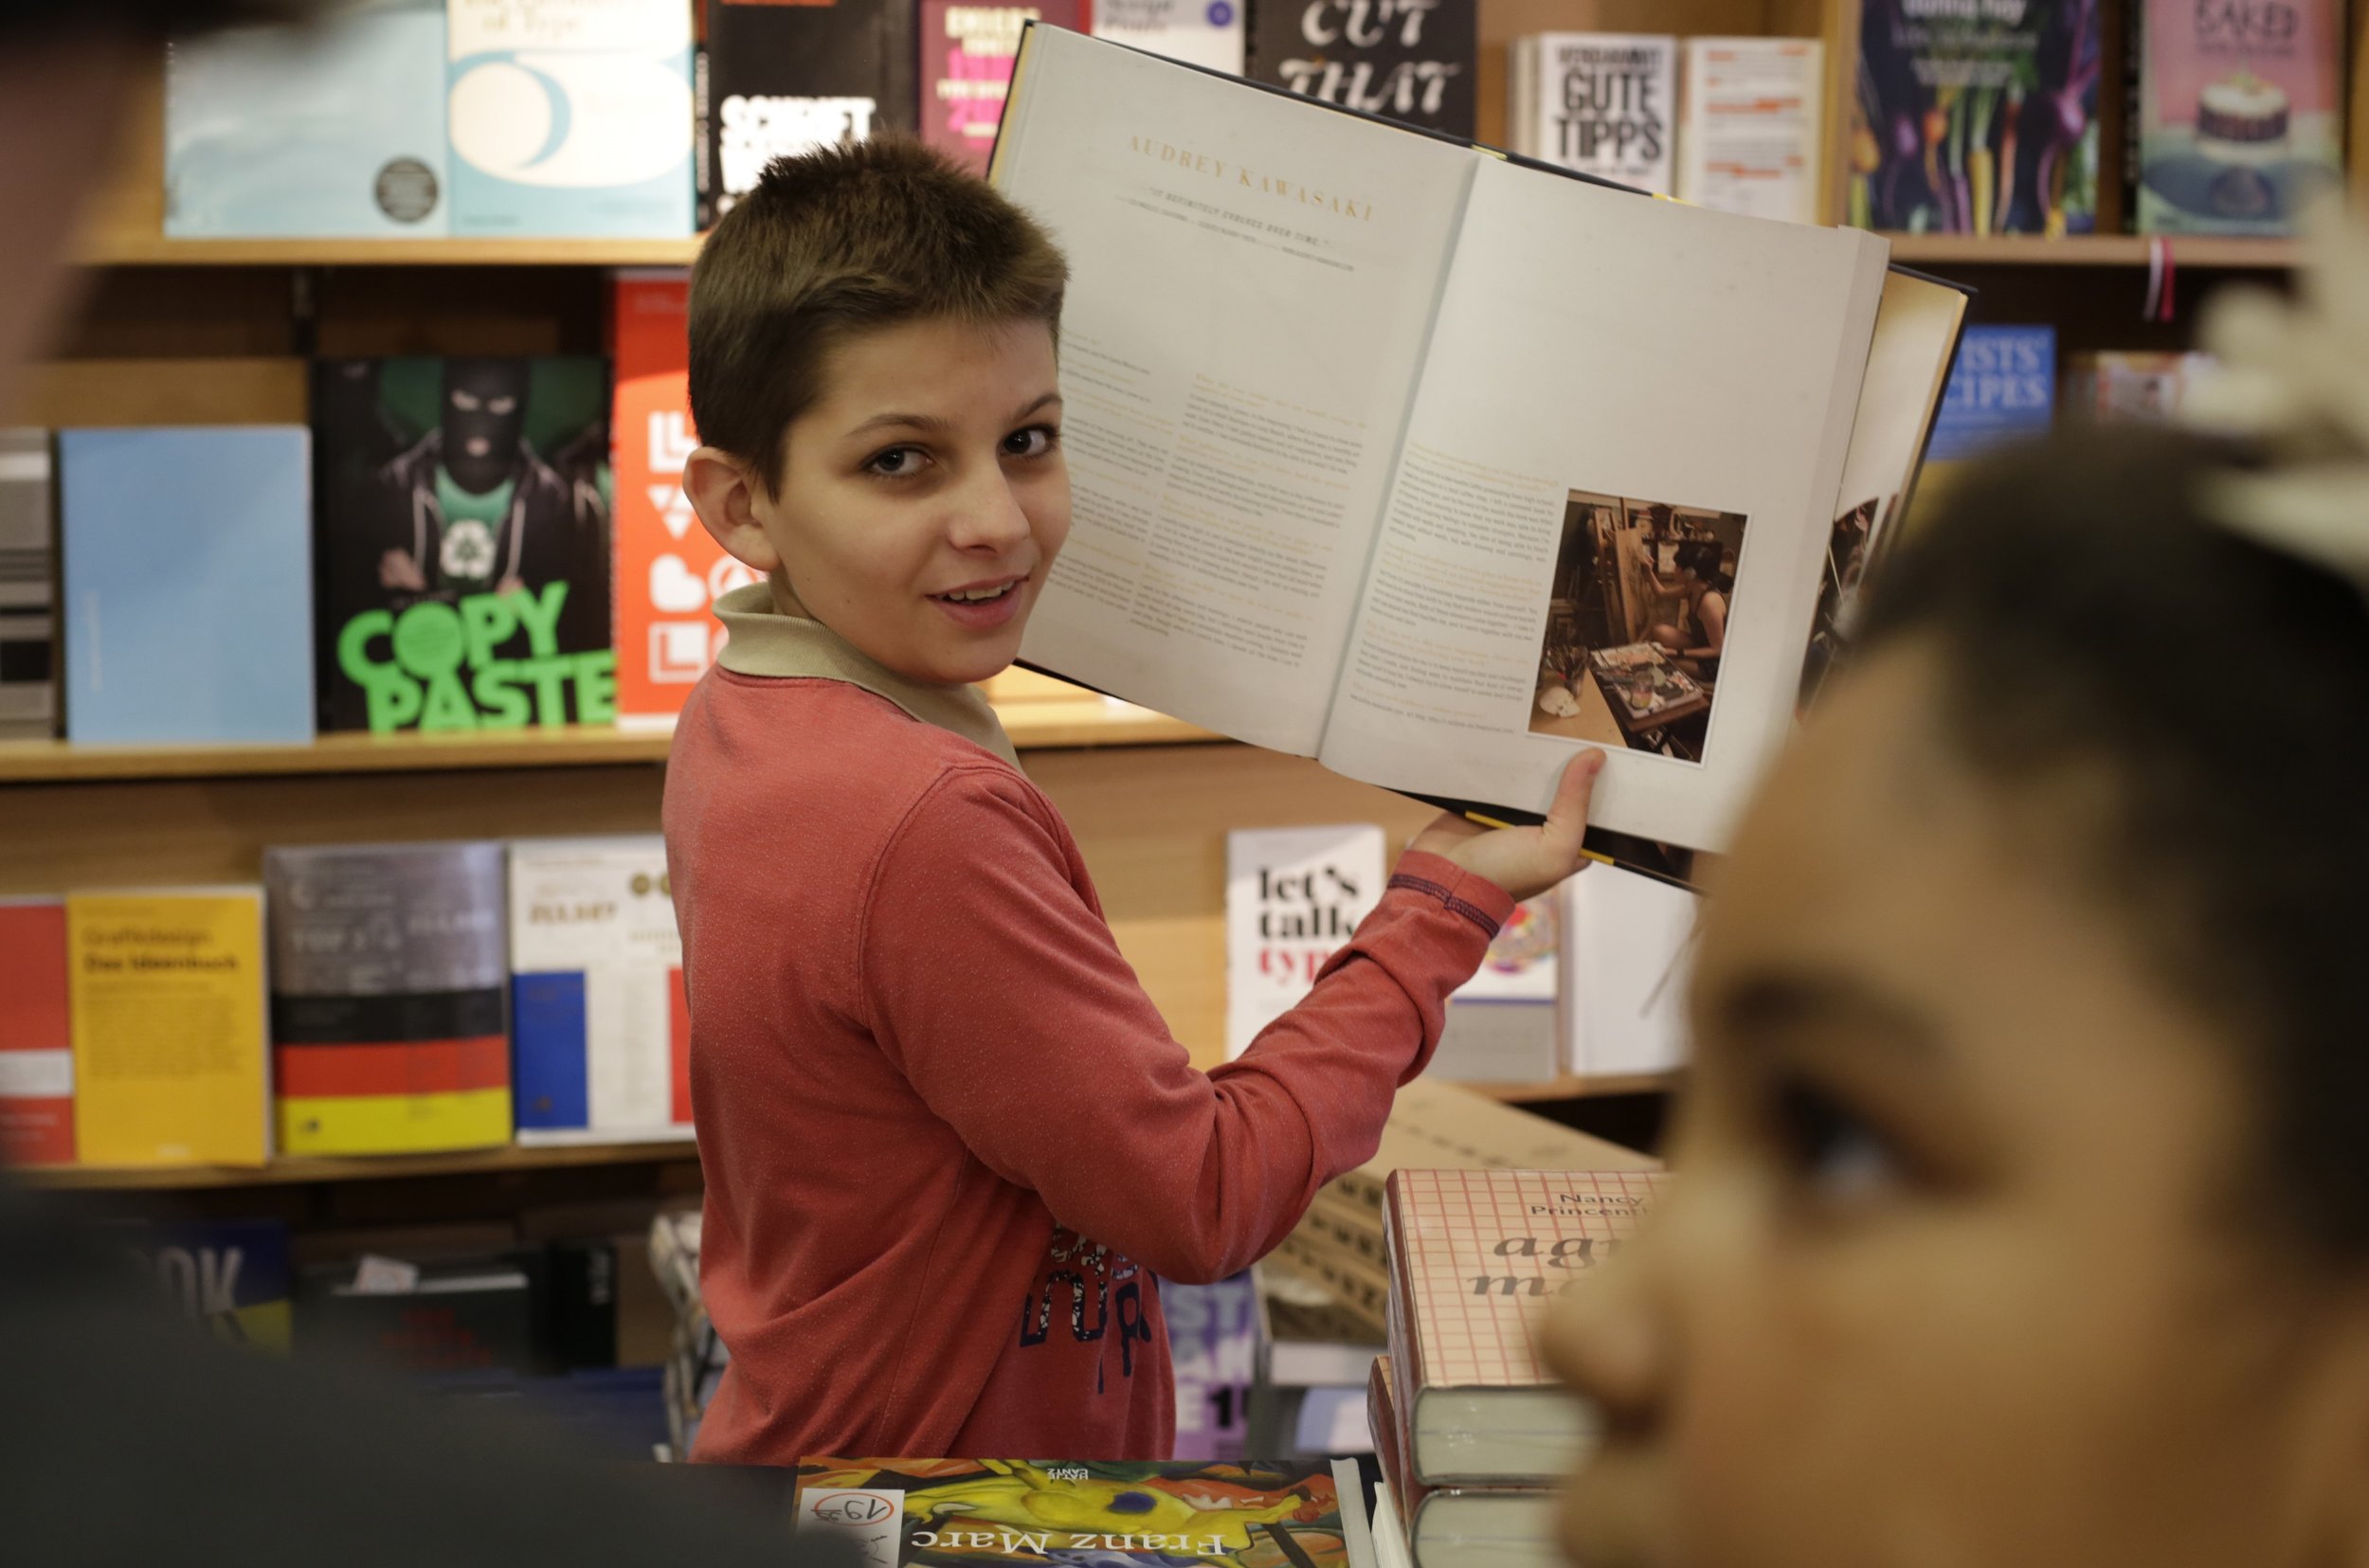 Bild aus dem Programm CHILDREN Entdecker (Kinderarmut): Junge steht vor einem Bücherregal und hält ein Buch in den Händen